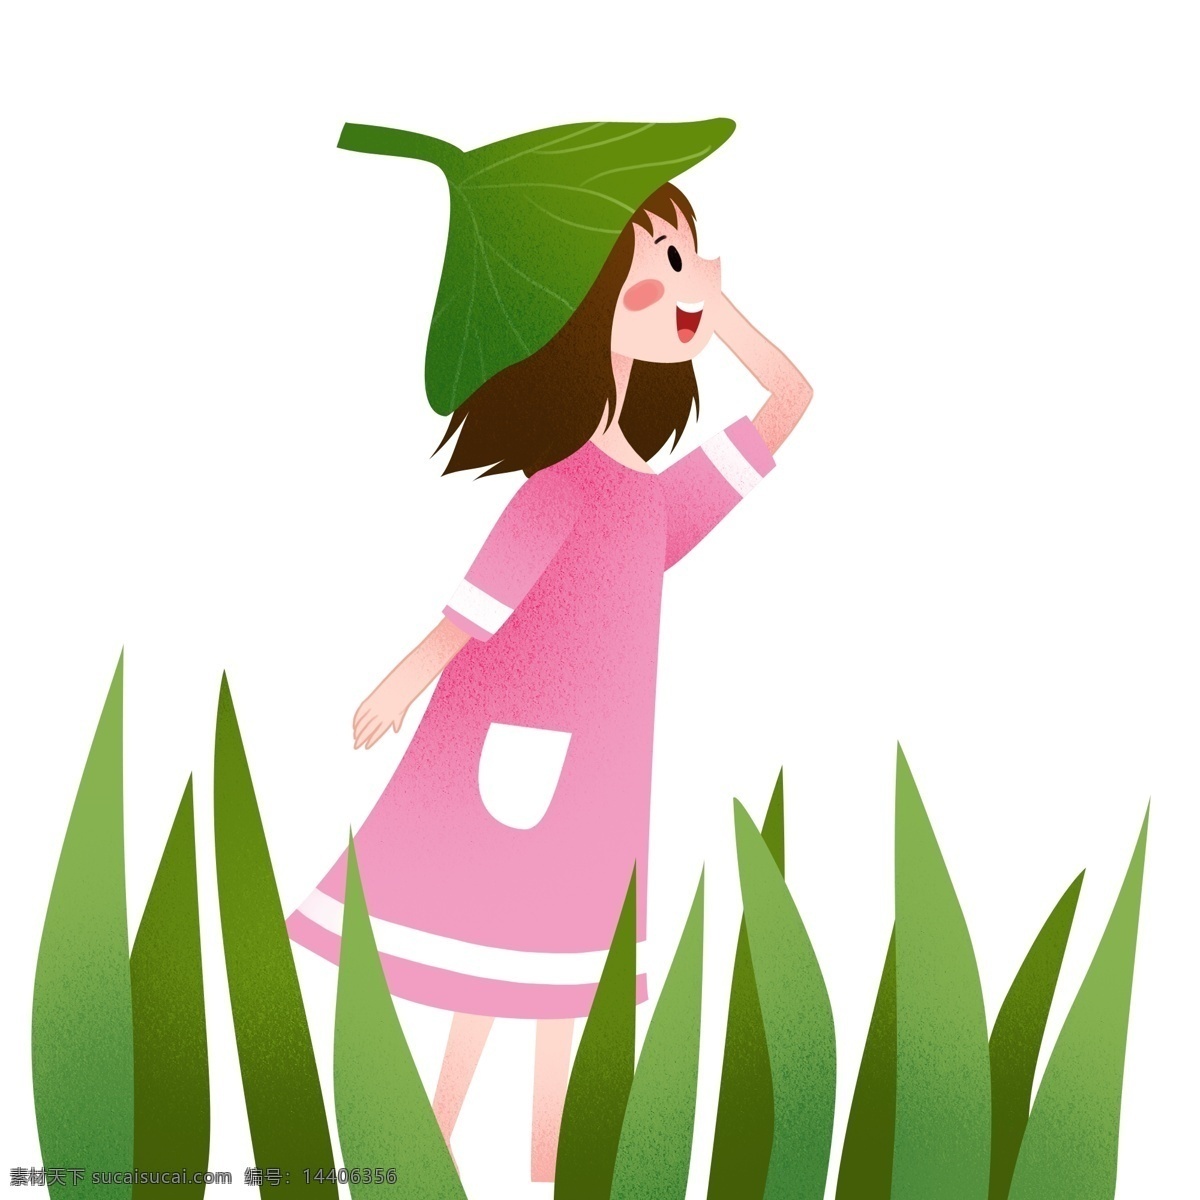 戴 叶子 帽子 女孩 立夏人物插画 绿色的叶子 植物装饰 吹风的小女孩 漂亮的小女孩 卡通人物